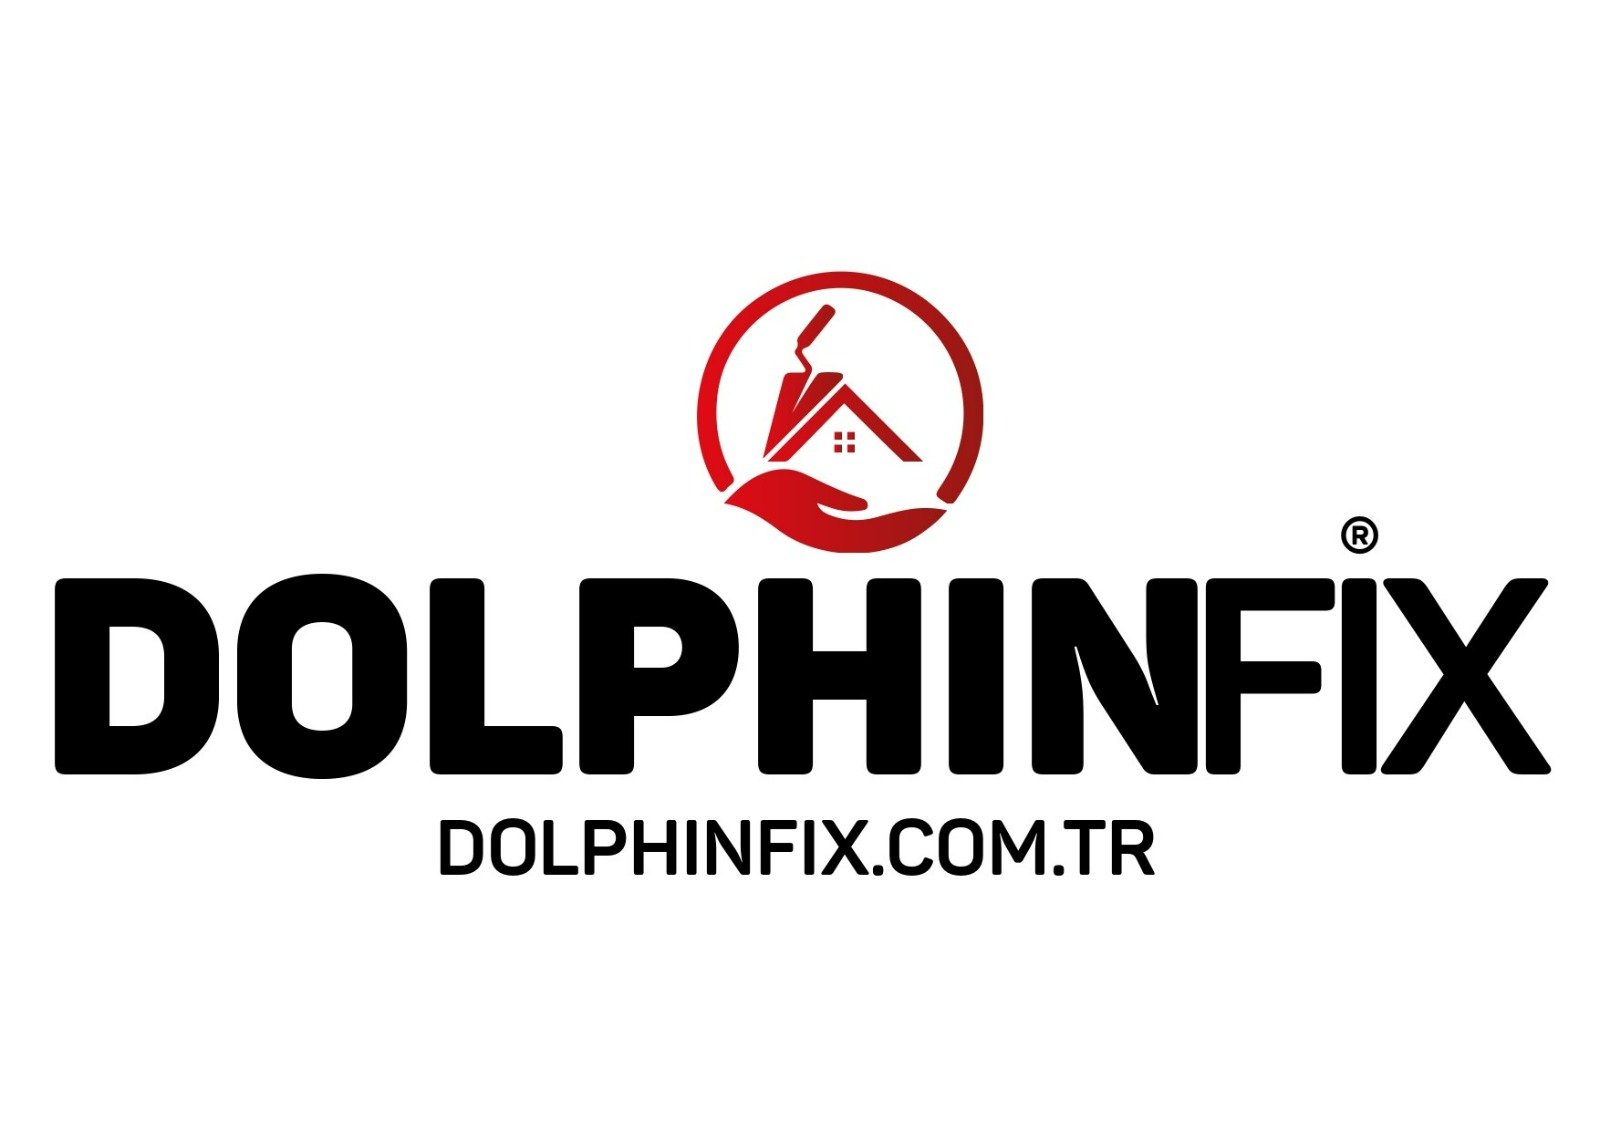 DolphinFix